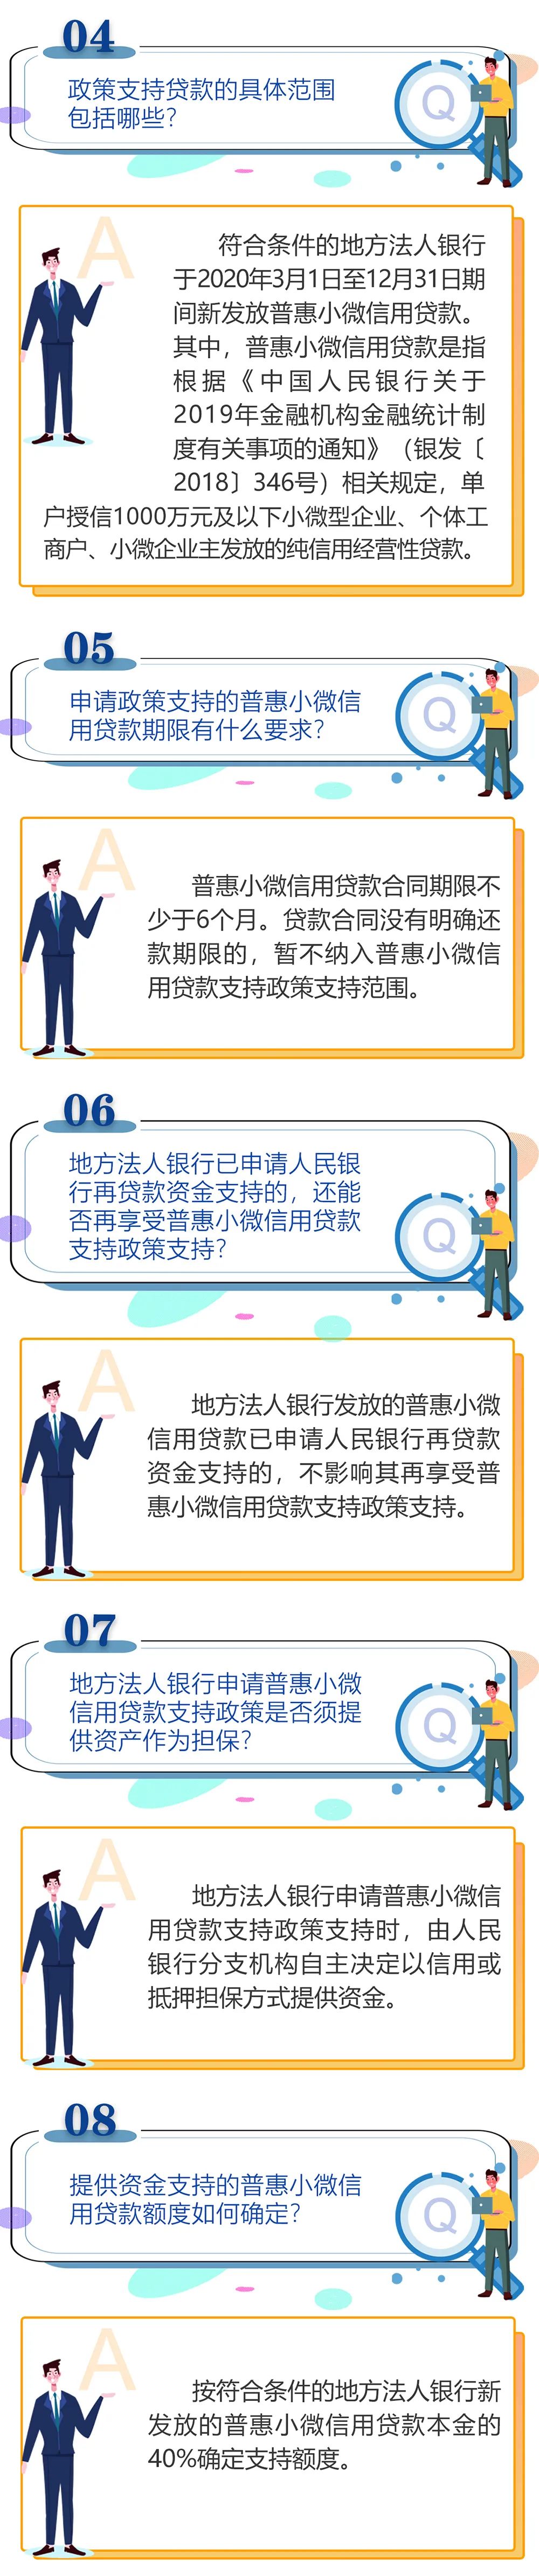 【政策指南】普惠小微信用贷款支持政策问答(图2)